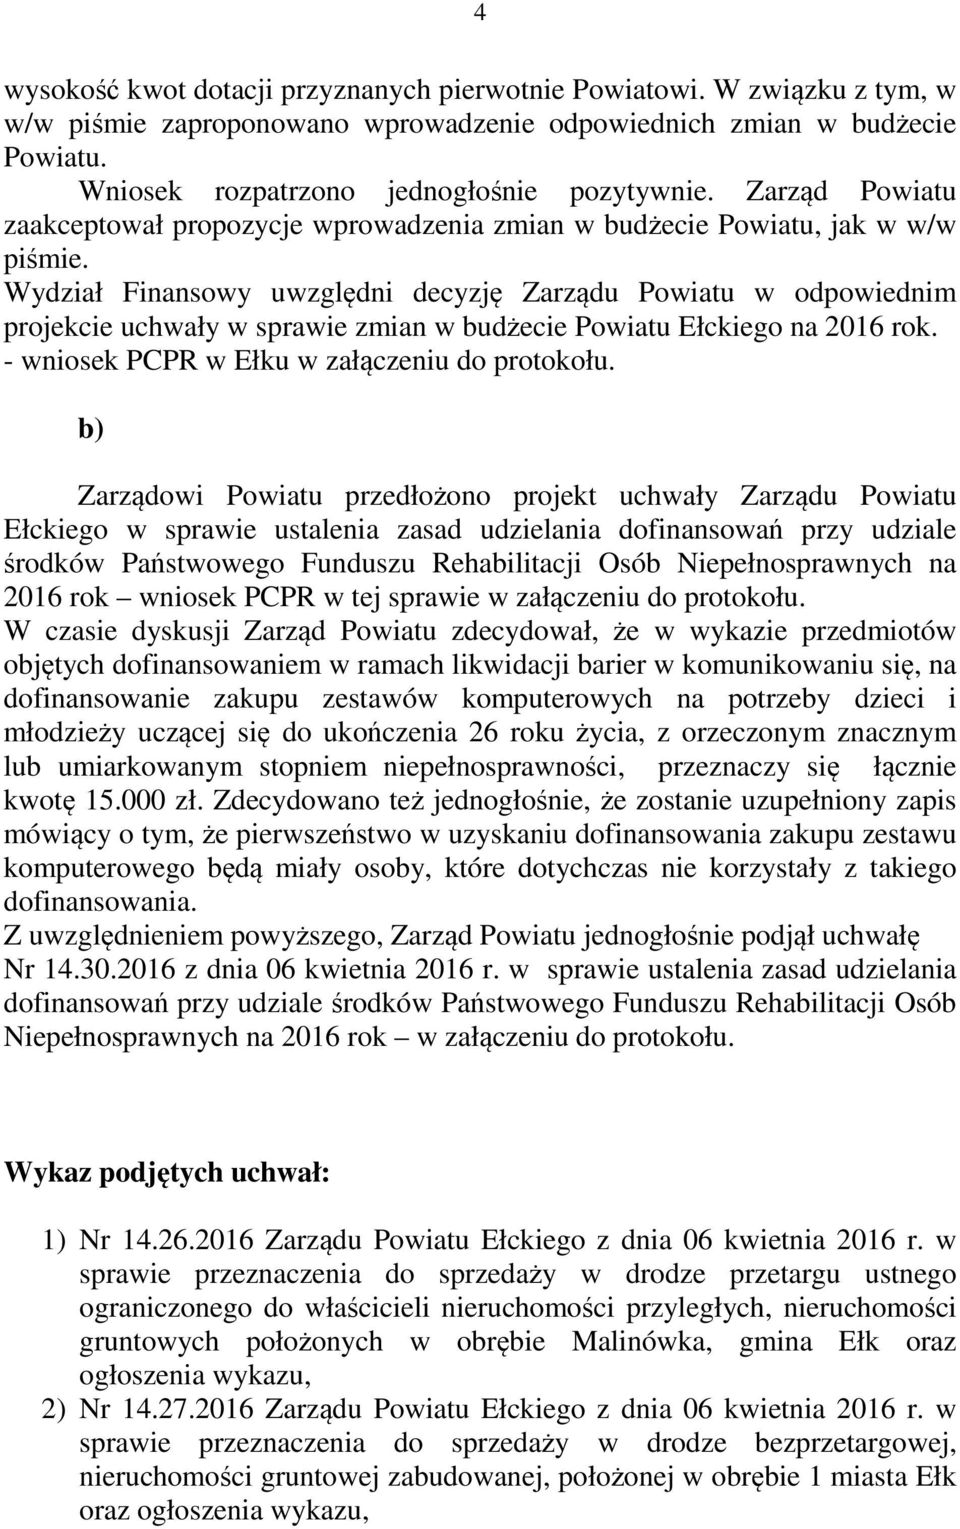 Wydział Finansowy uwzględni decyzję Zarządu Powiatu w odpowiednim projekcie uchwały w sprawie zmian w budżecie Powiatu Ełckiego na 2016 rok. - wniosek PCPR w Ełku w załączeniu do protokołu.